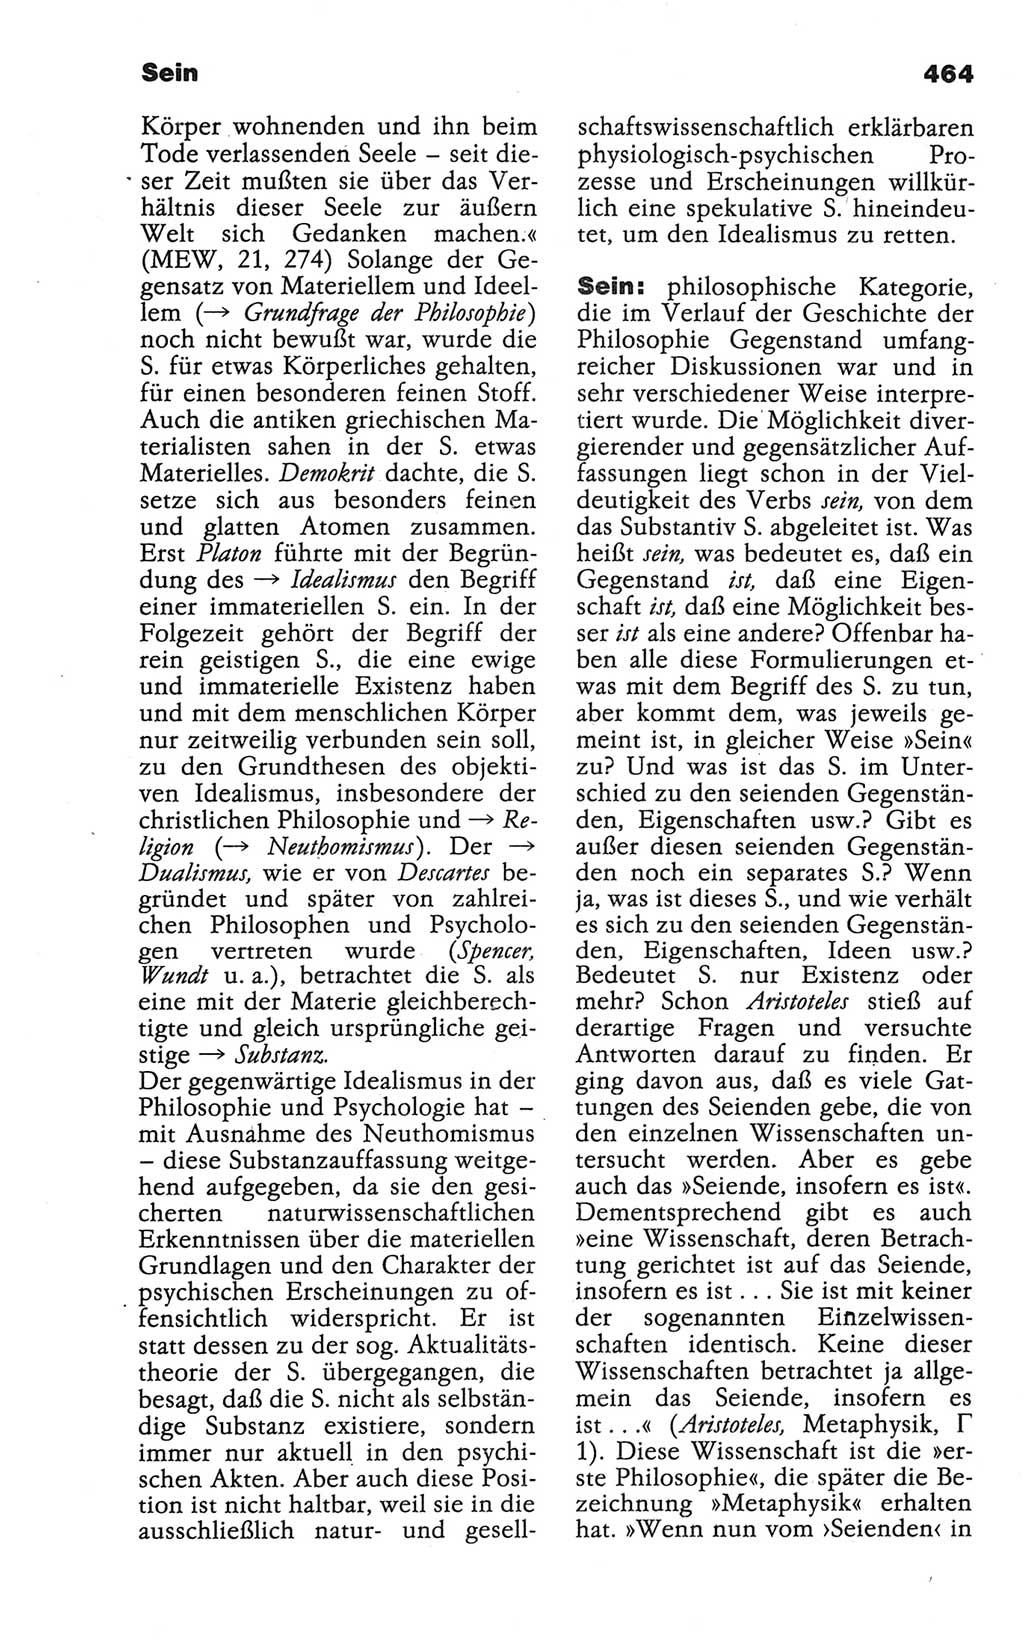 Wörterbuch der marxistisch-leninistischen Philosophie [Deutsche Demokratische Republik (DDR)] 1986, Seite 464 (Wb. ML Phil. DDR 1986, S. 464)